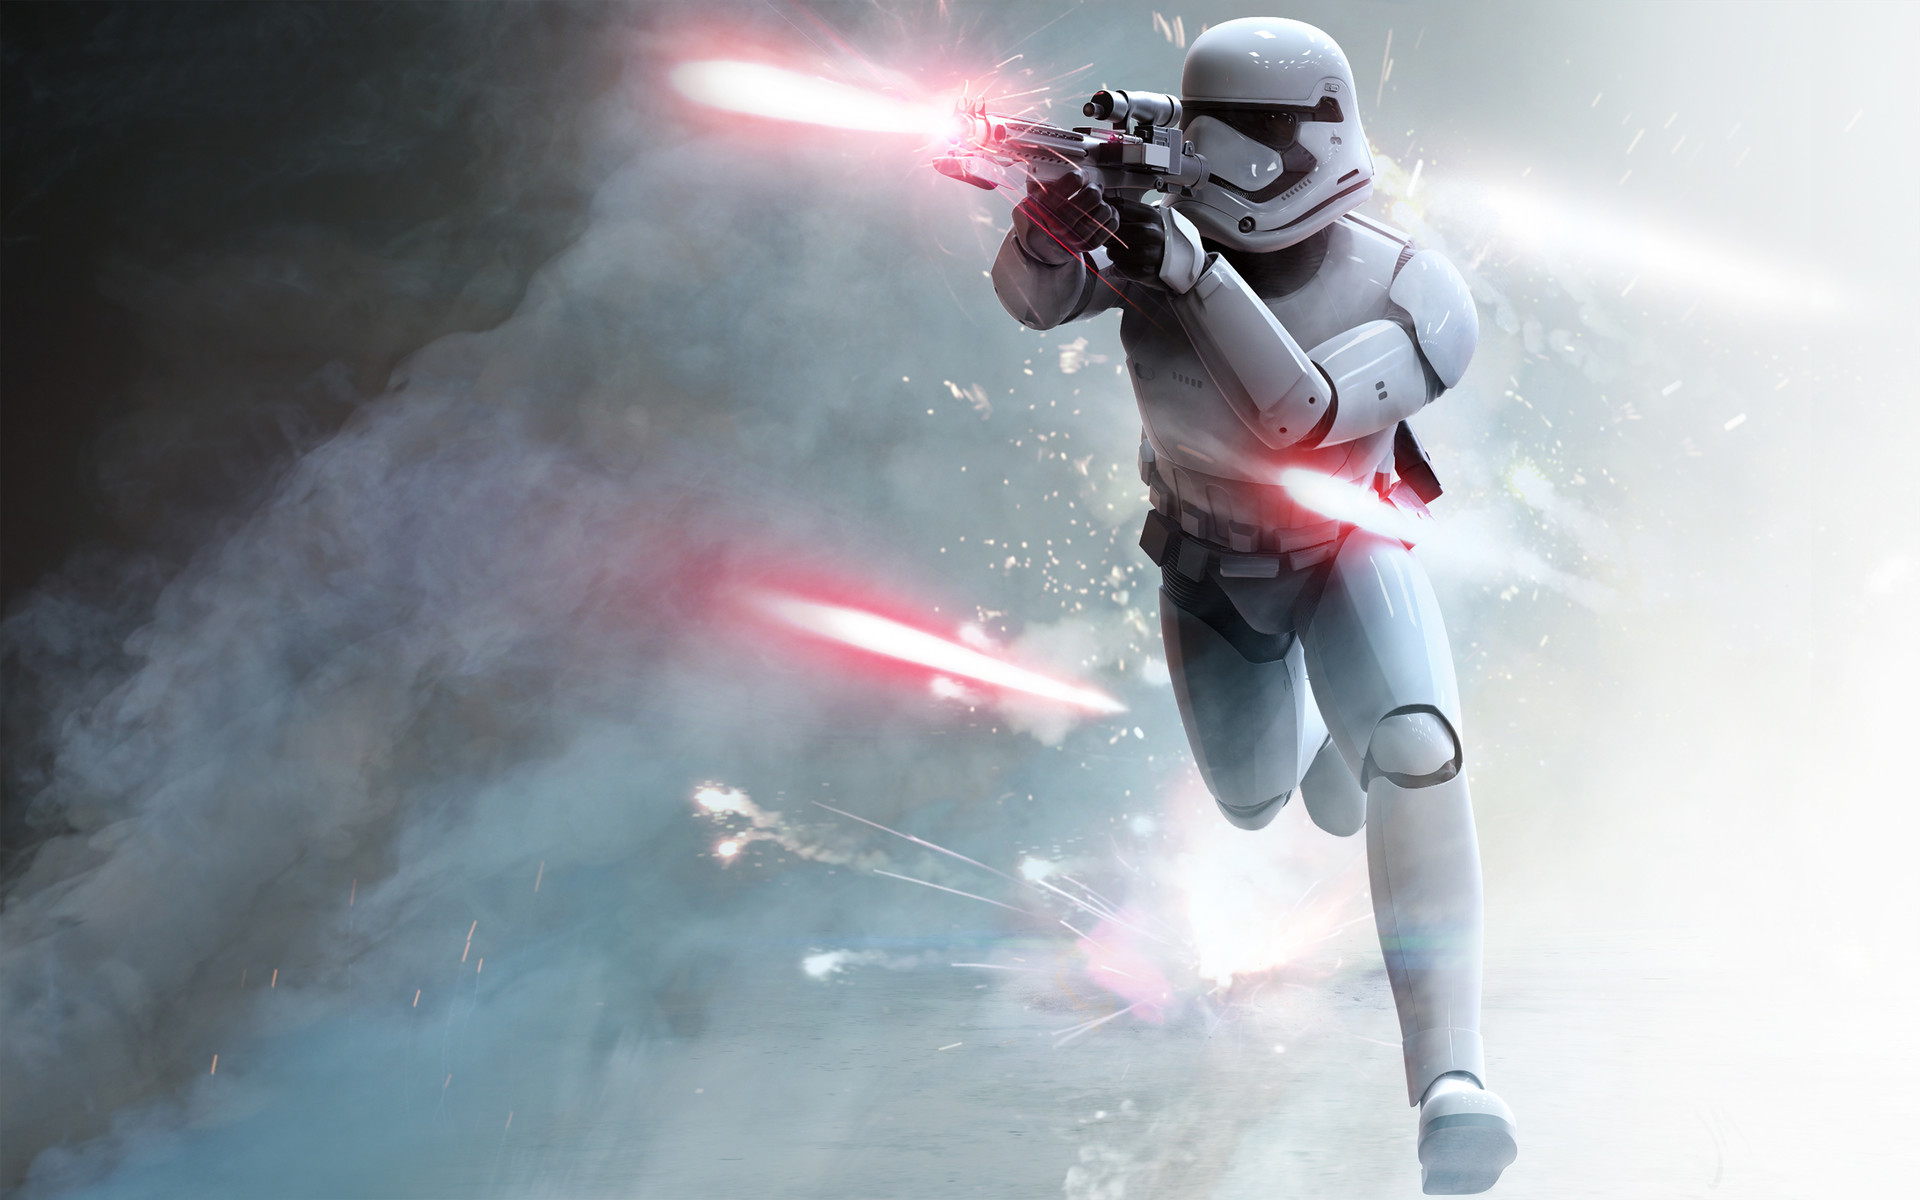 First Order Stormtrooper by Juan Martn